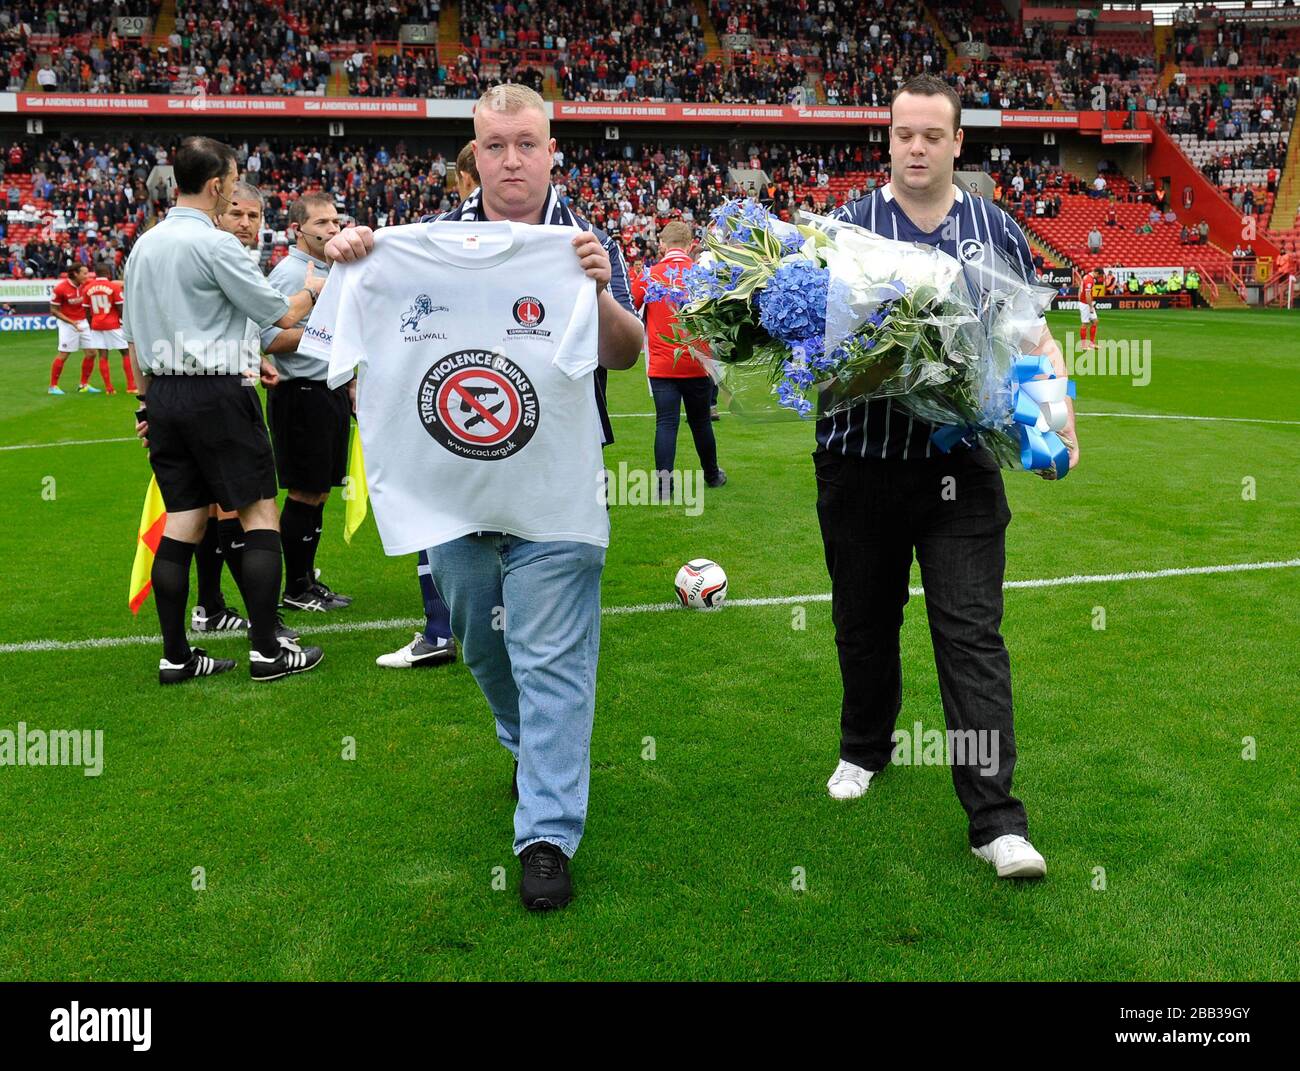 Deux ventilateurs Millwall jettent des fleurs en mémoire de Jimmy Mizen Banque D'Images